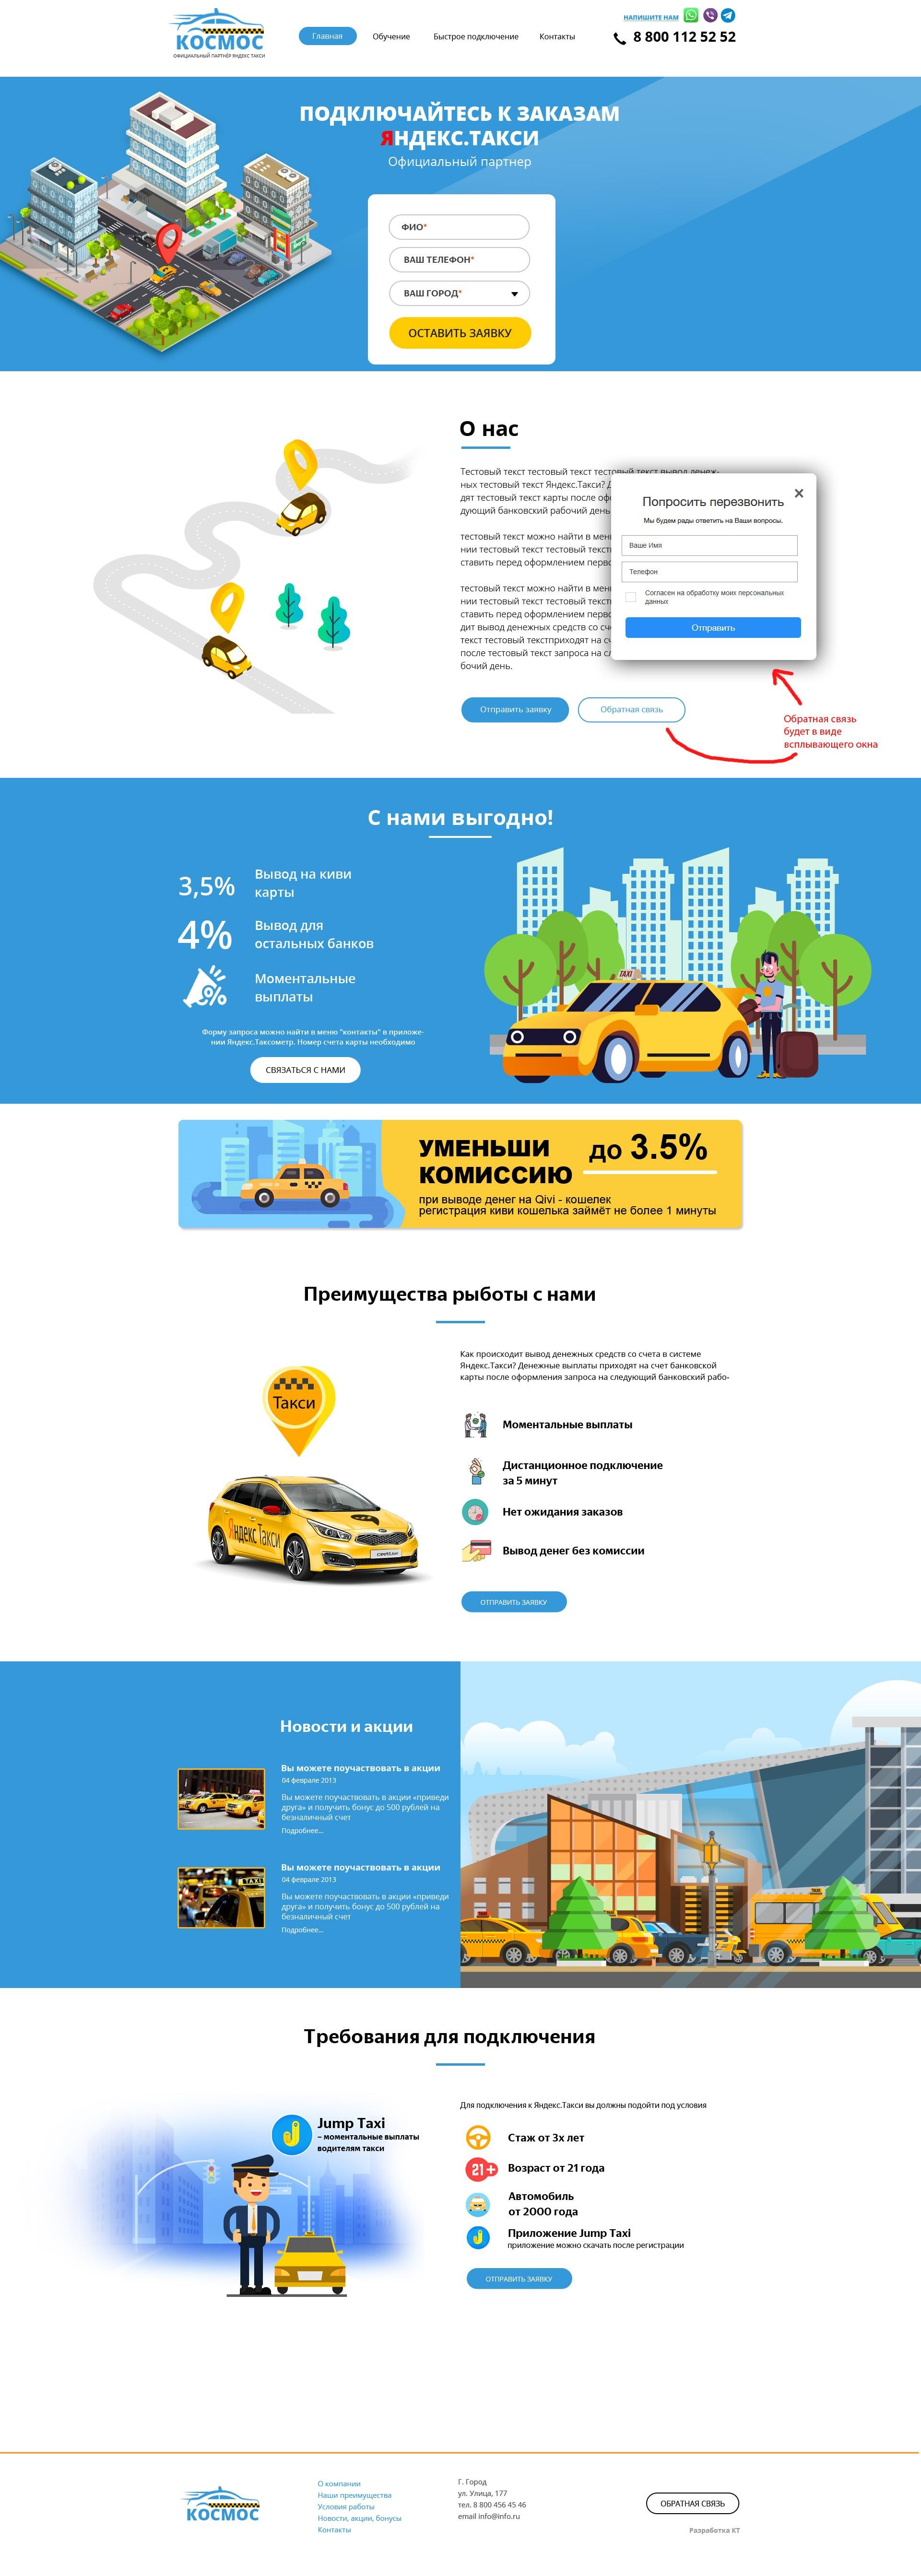 Разработка сайта такси, поддержка сайтов таксопарков, продвижение сайта такси в городе